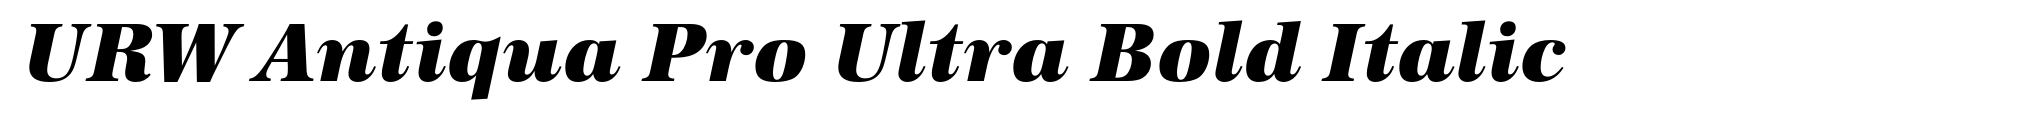 URW Antiqua Pro Ultra Bold Italic image